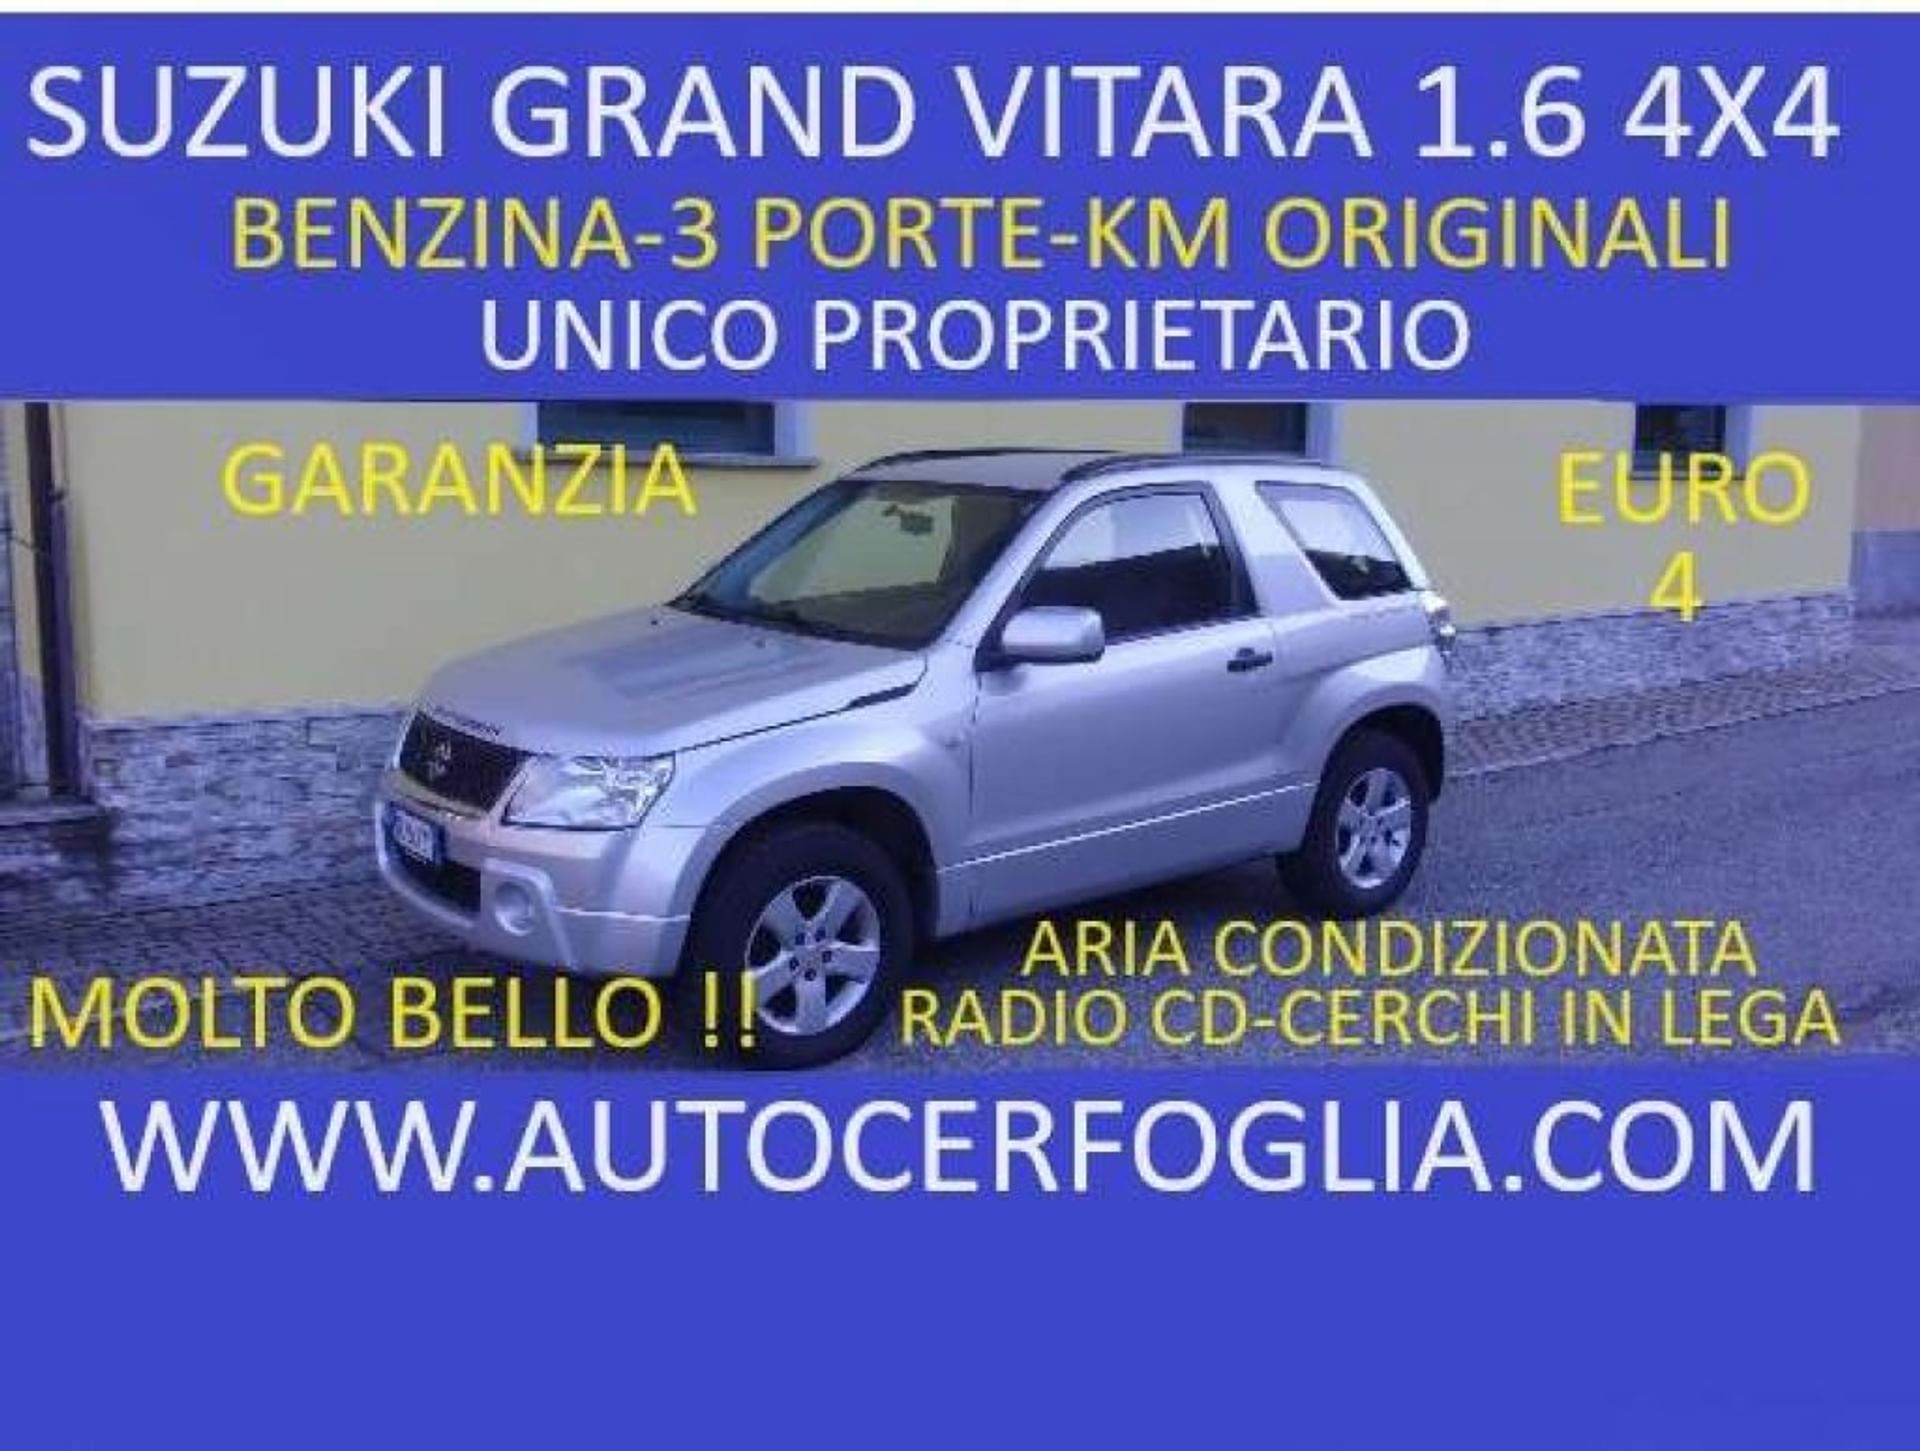 Suzuki Grand Vitara 1.6